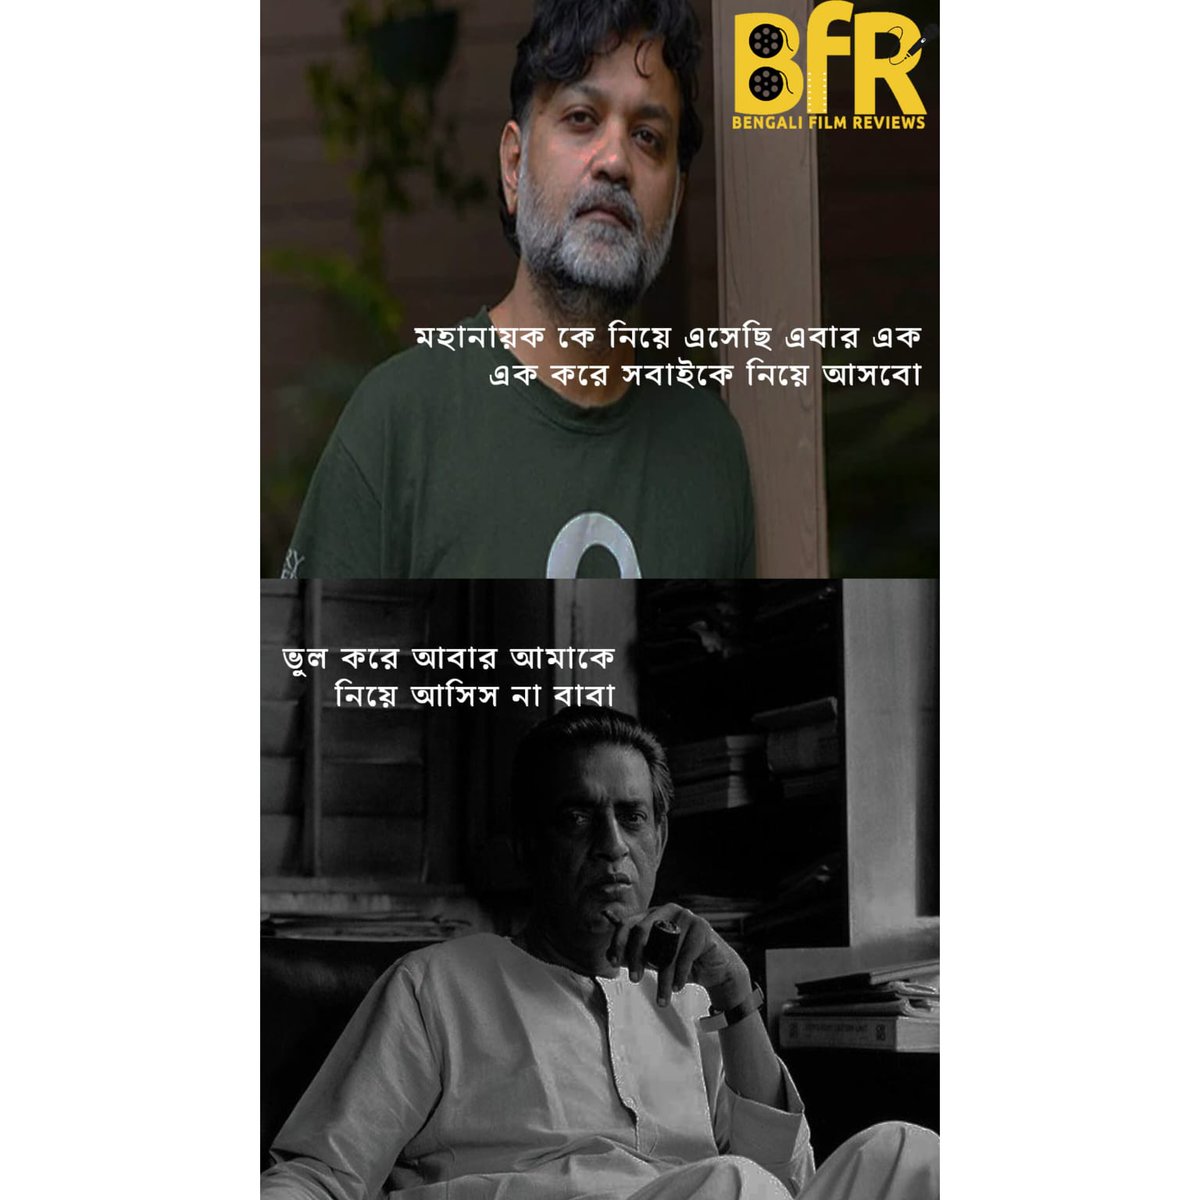 মহানায়ক তো ফিরলেন। এরপর কার পালা? 🤨
.
.
.
#Bfrmemes #Memecontent #bengalimeme #bengalifilms #memeonbengalifilms #srijitmukherjee #Otiuttam #uttamkumar #satyajitroy #Bfr